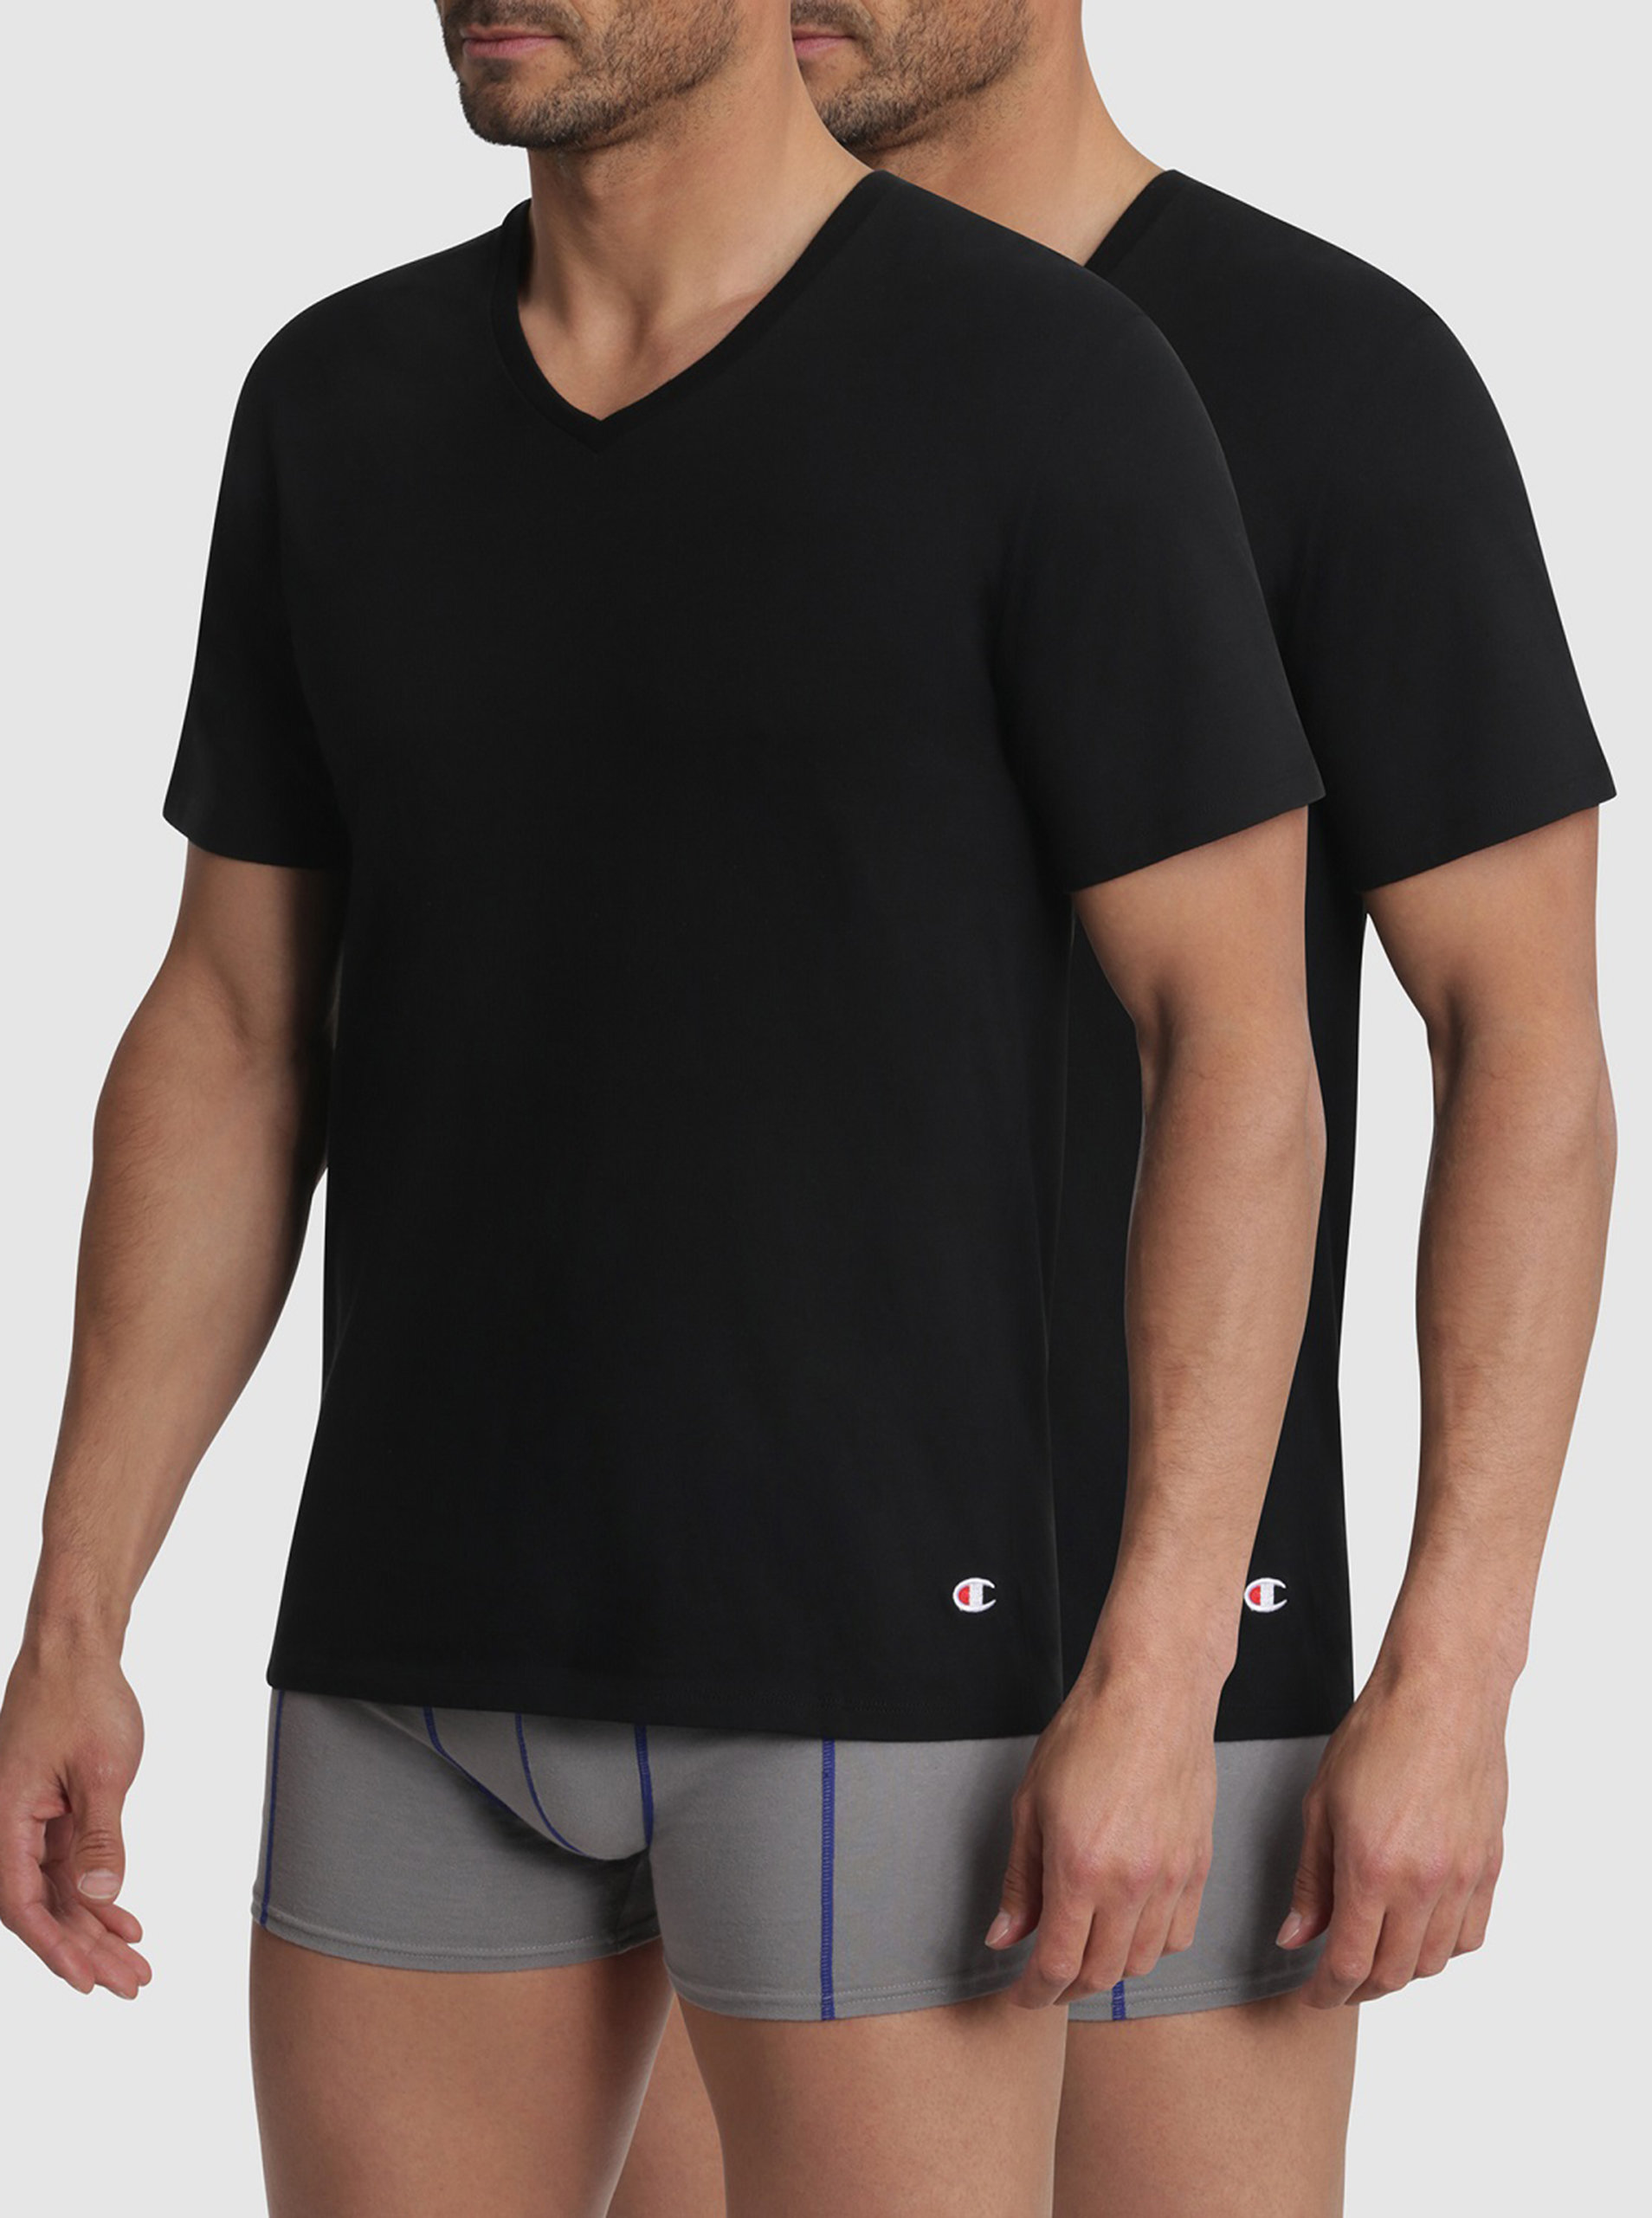 T-SHIRT CHAMPION V-NECK 2x - Bavlněné triko Champion 2 ks - černá